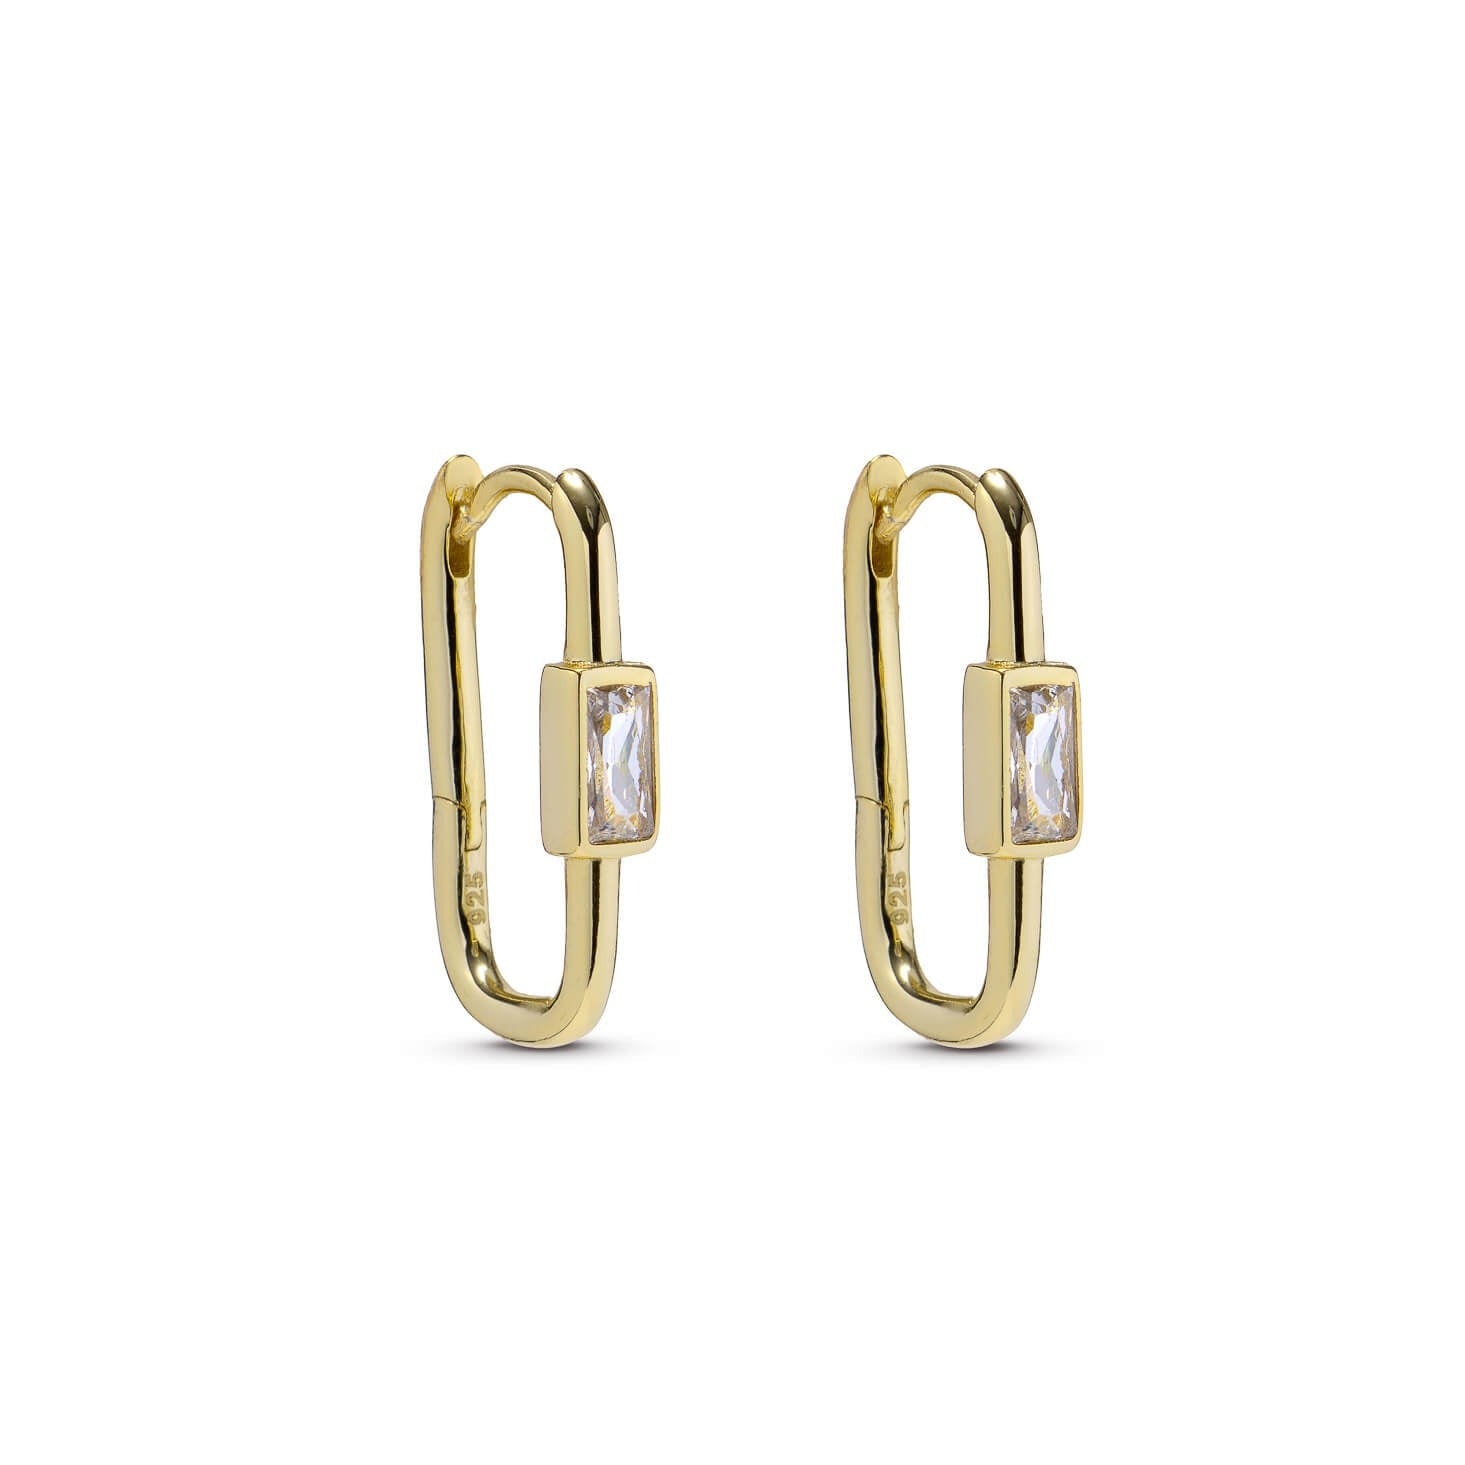 Rectangular Gold Hoop Earrings with Cubic Zirconia